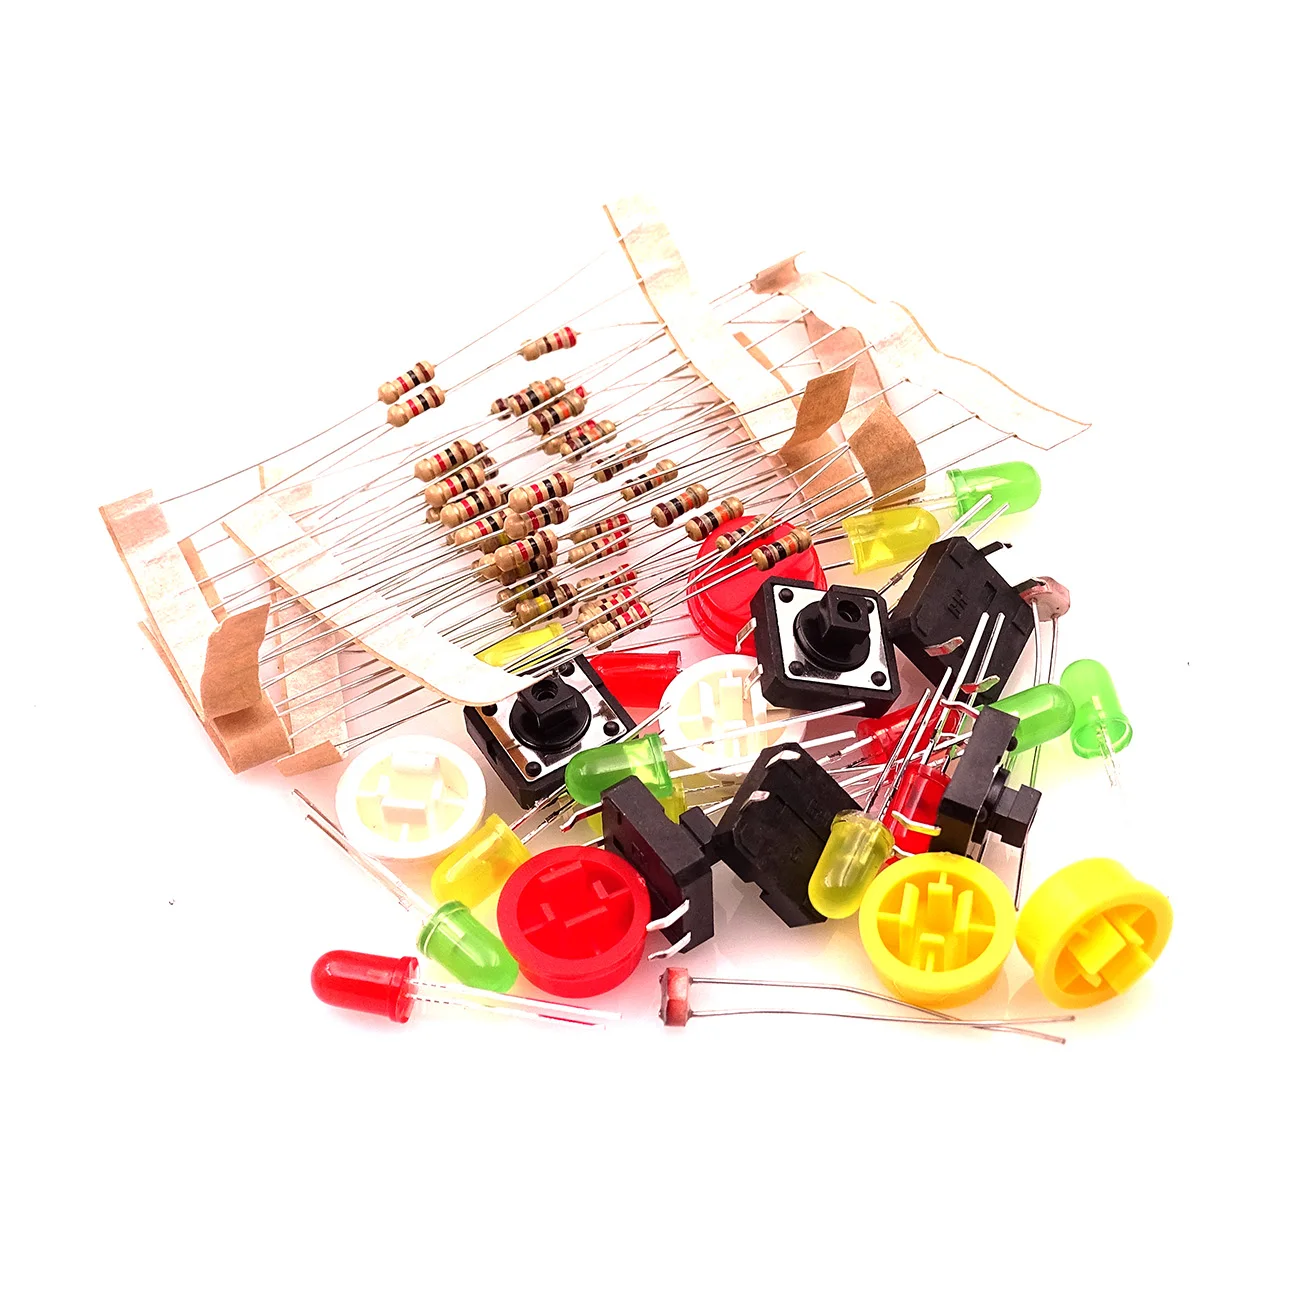 10 postavil nov Starter Kit UNO R3 mini Breadboard LED skakalec žice gumb za smart kit